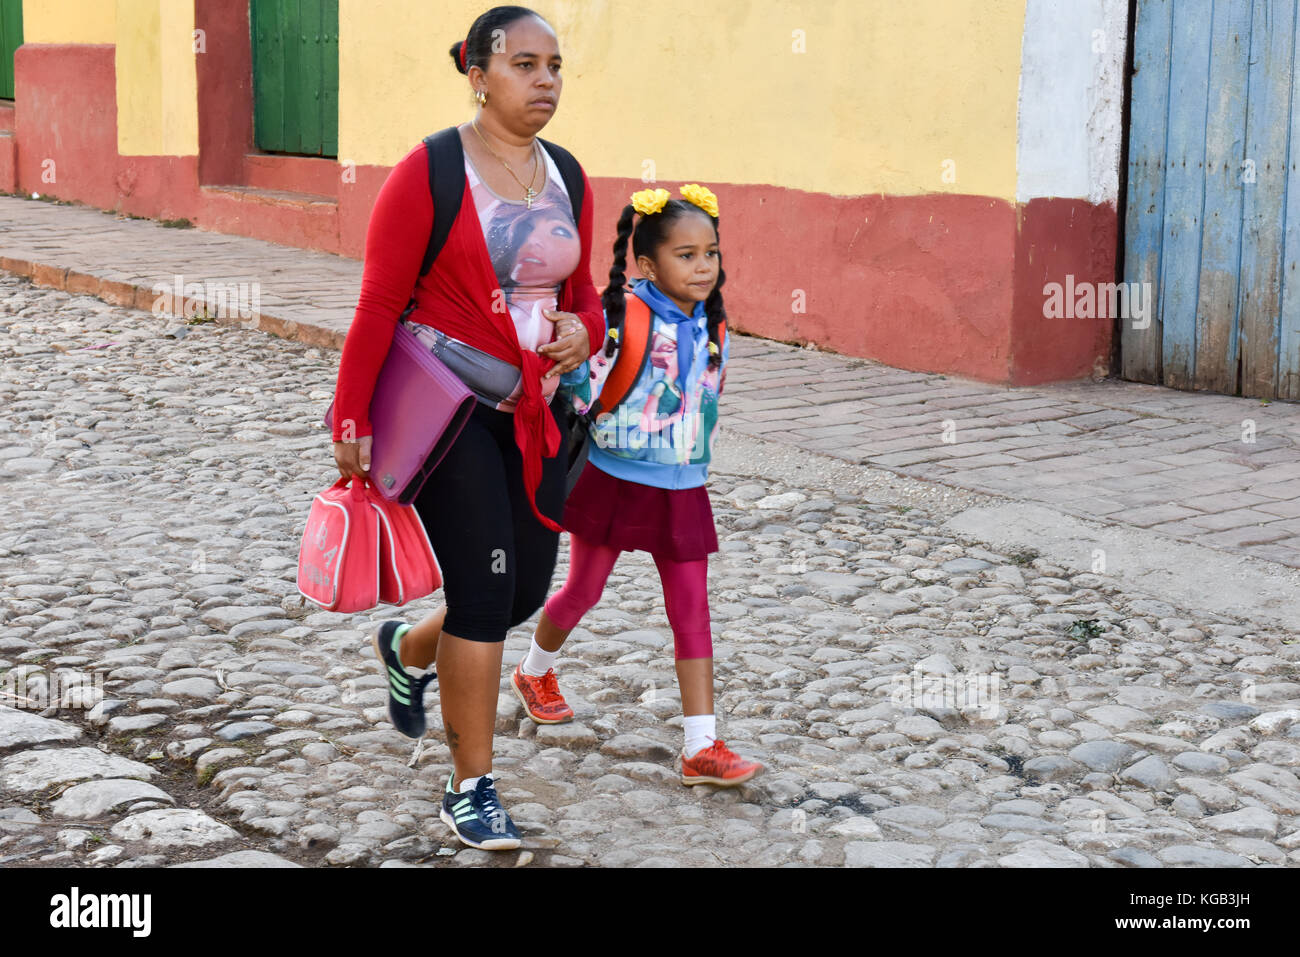 La madre e il bambino sul loro modo di scuola, Trinidad, Cuba Foto Stock